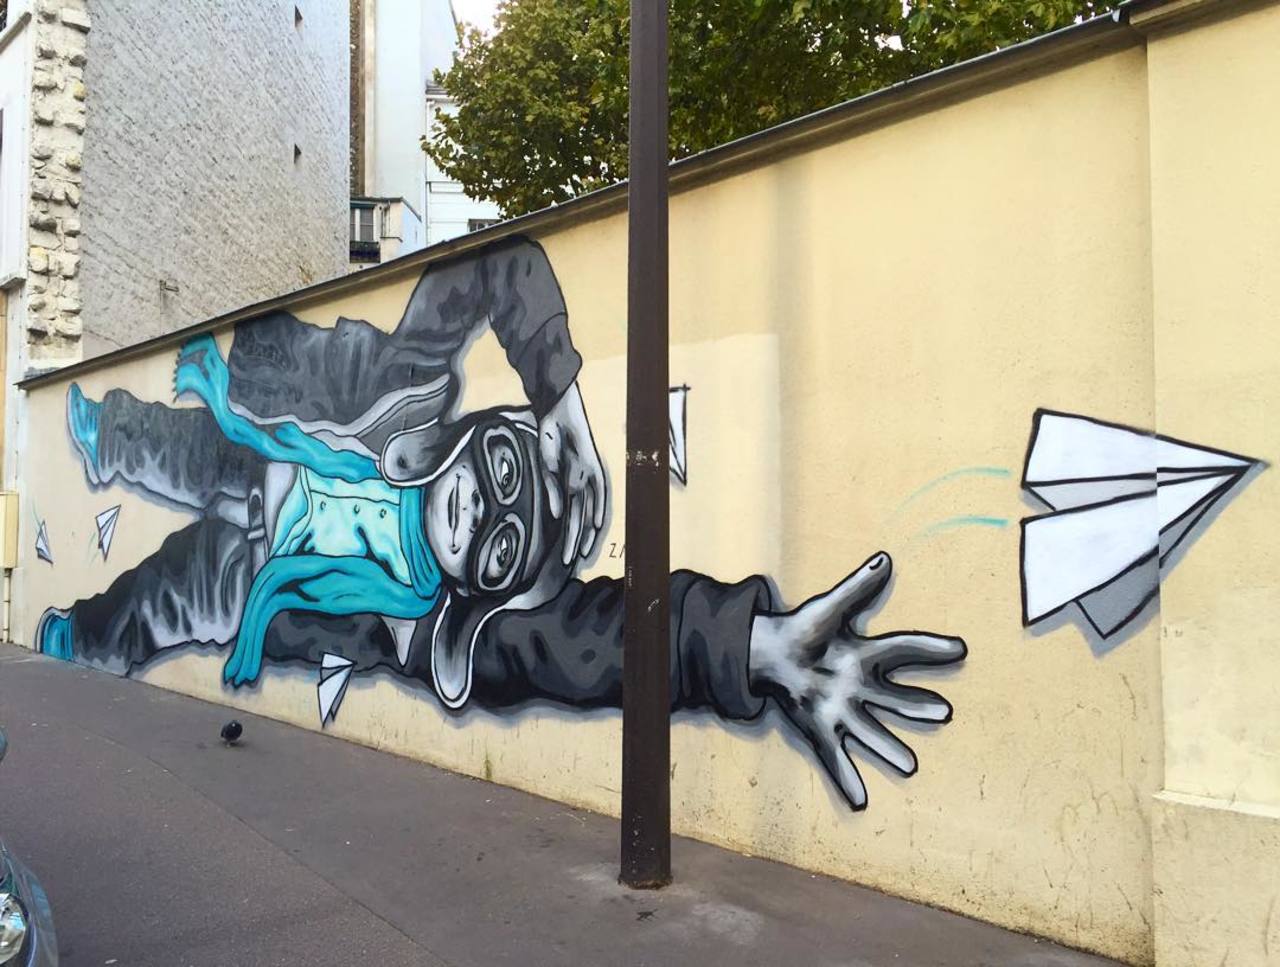 #Paris #graffiti photo by @jeanlucr http://ift.tt/1Nu7TZl #StreetArt http://t.co/pXmpxc6xp3